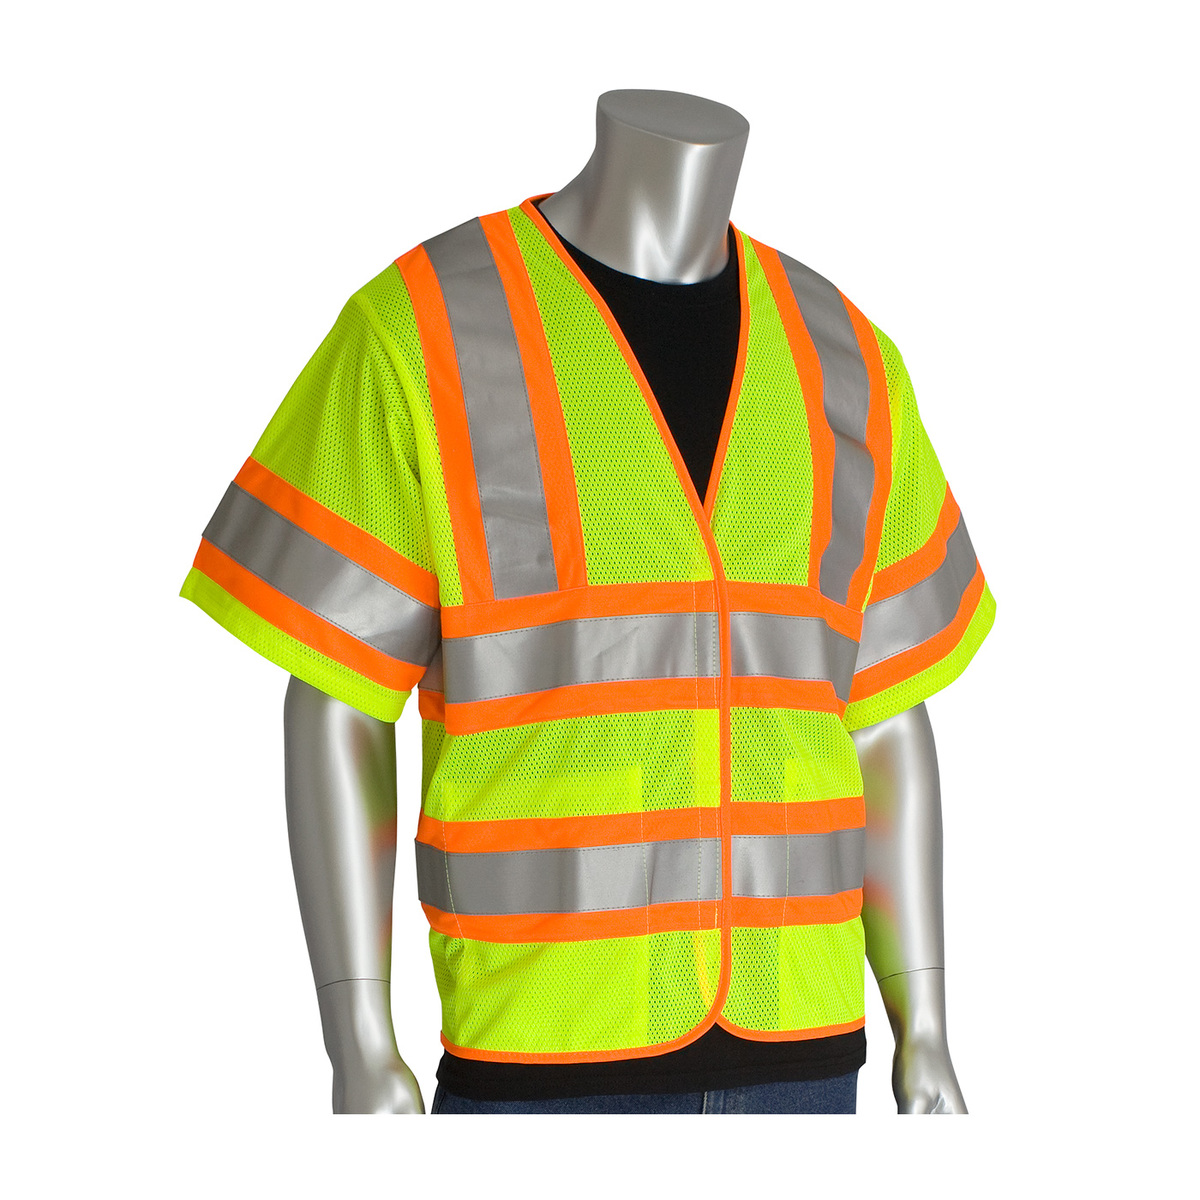 PIP® Large - X-Large/Large/X-Large Hi-Viz Yellow/Hi-Viz Orange Treated Polyester/Mesh FR Treated Two-Tone Vest